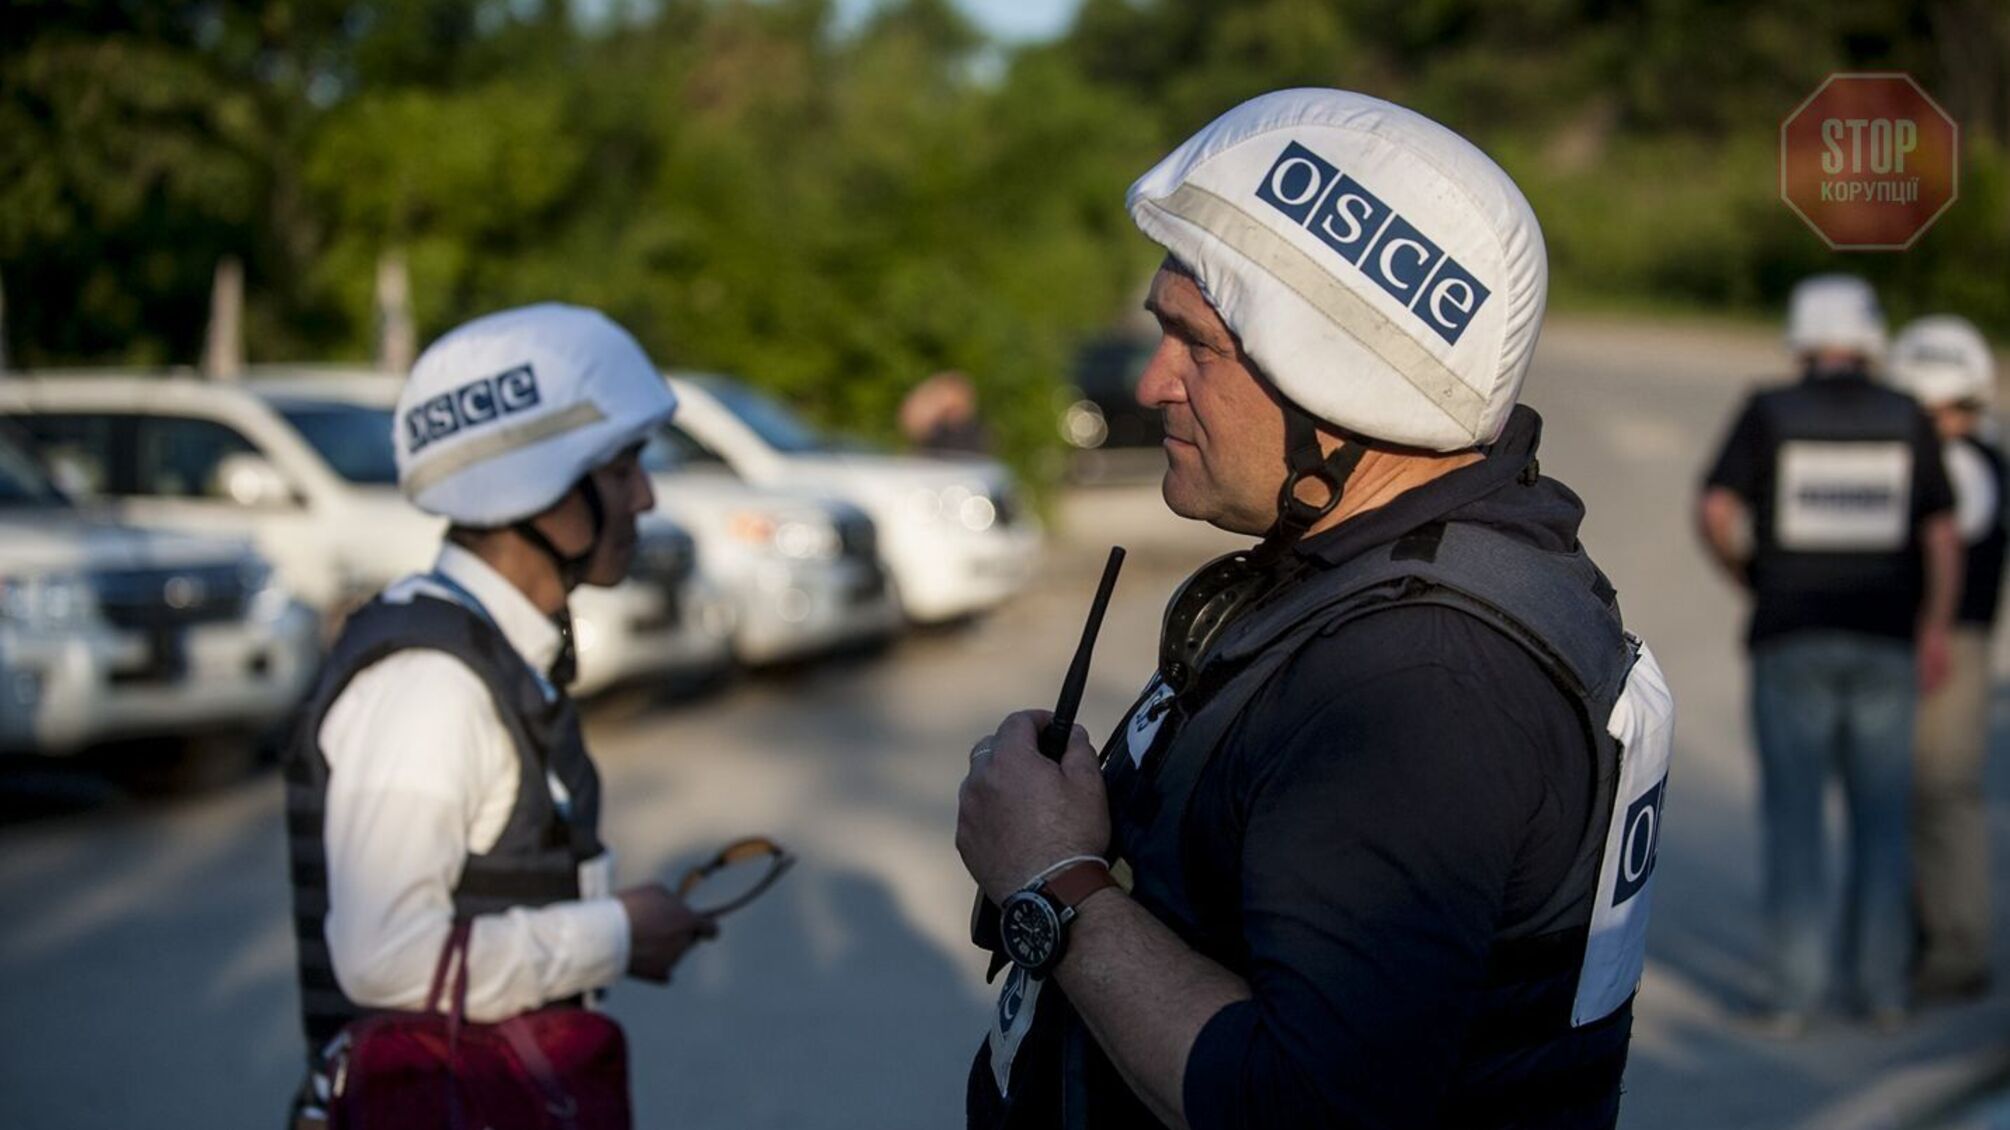 ОБСЕ потеряла беспилотник в Луганской области